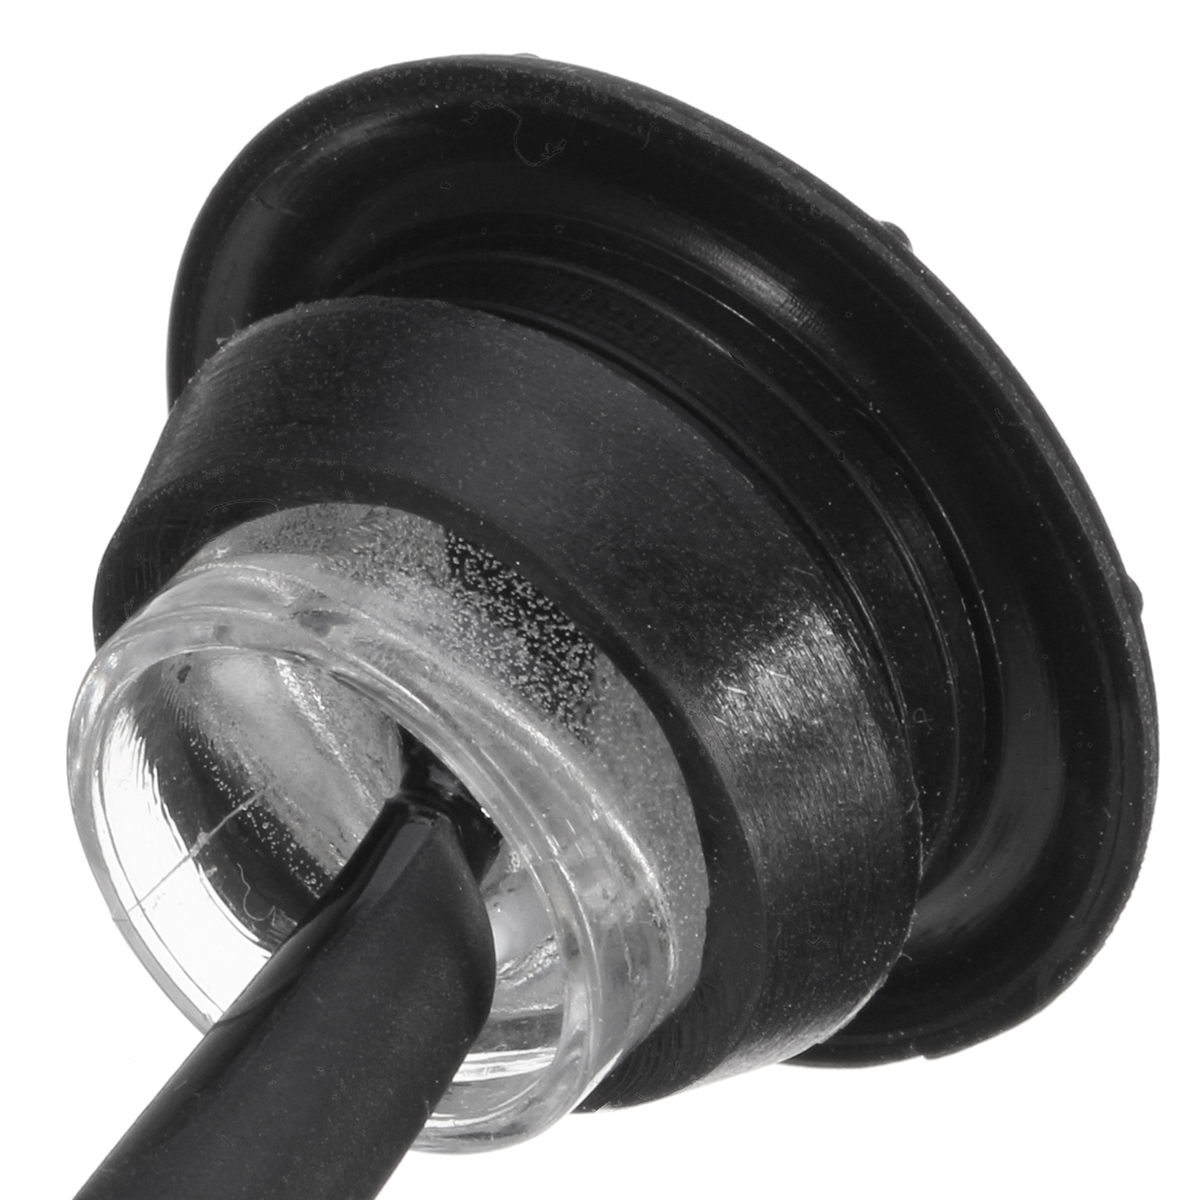 12V Mini Round LED Bullet Button Side Marker Lights Metal